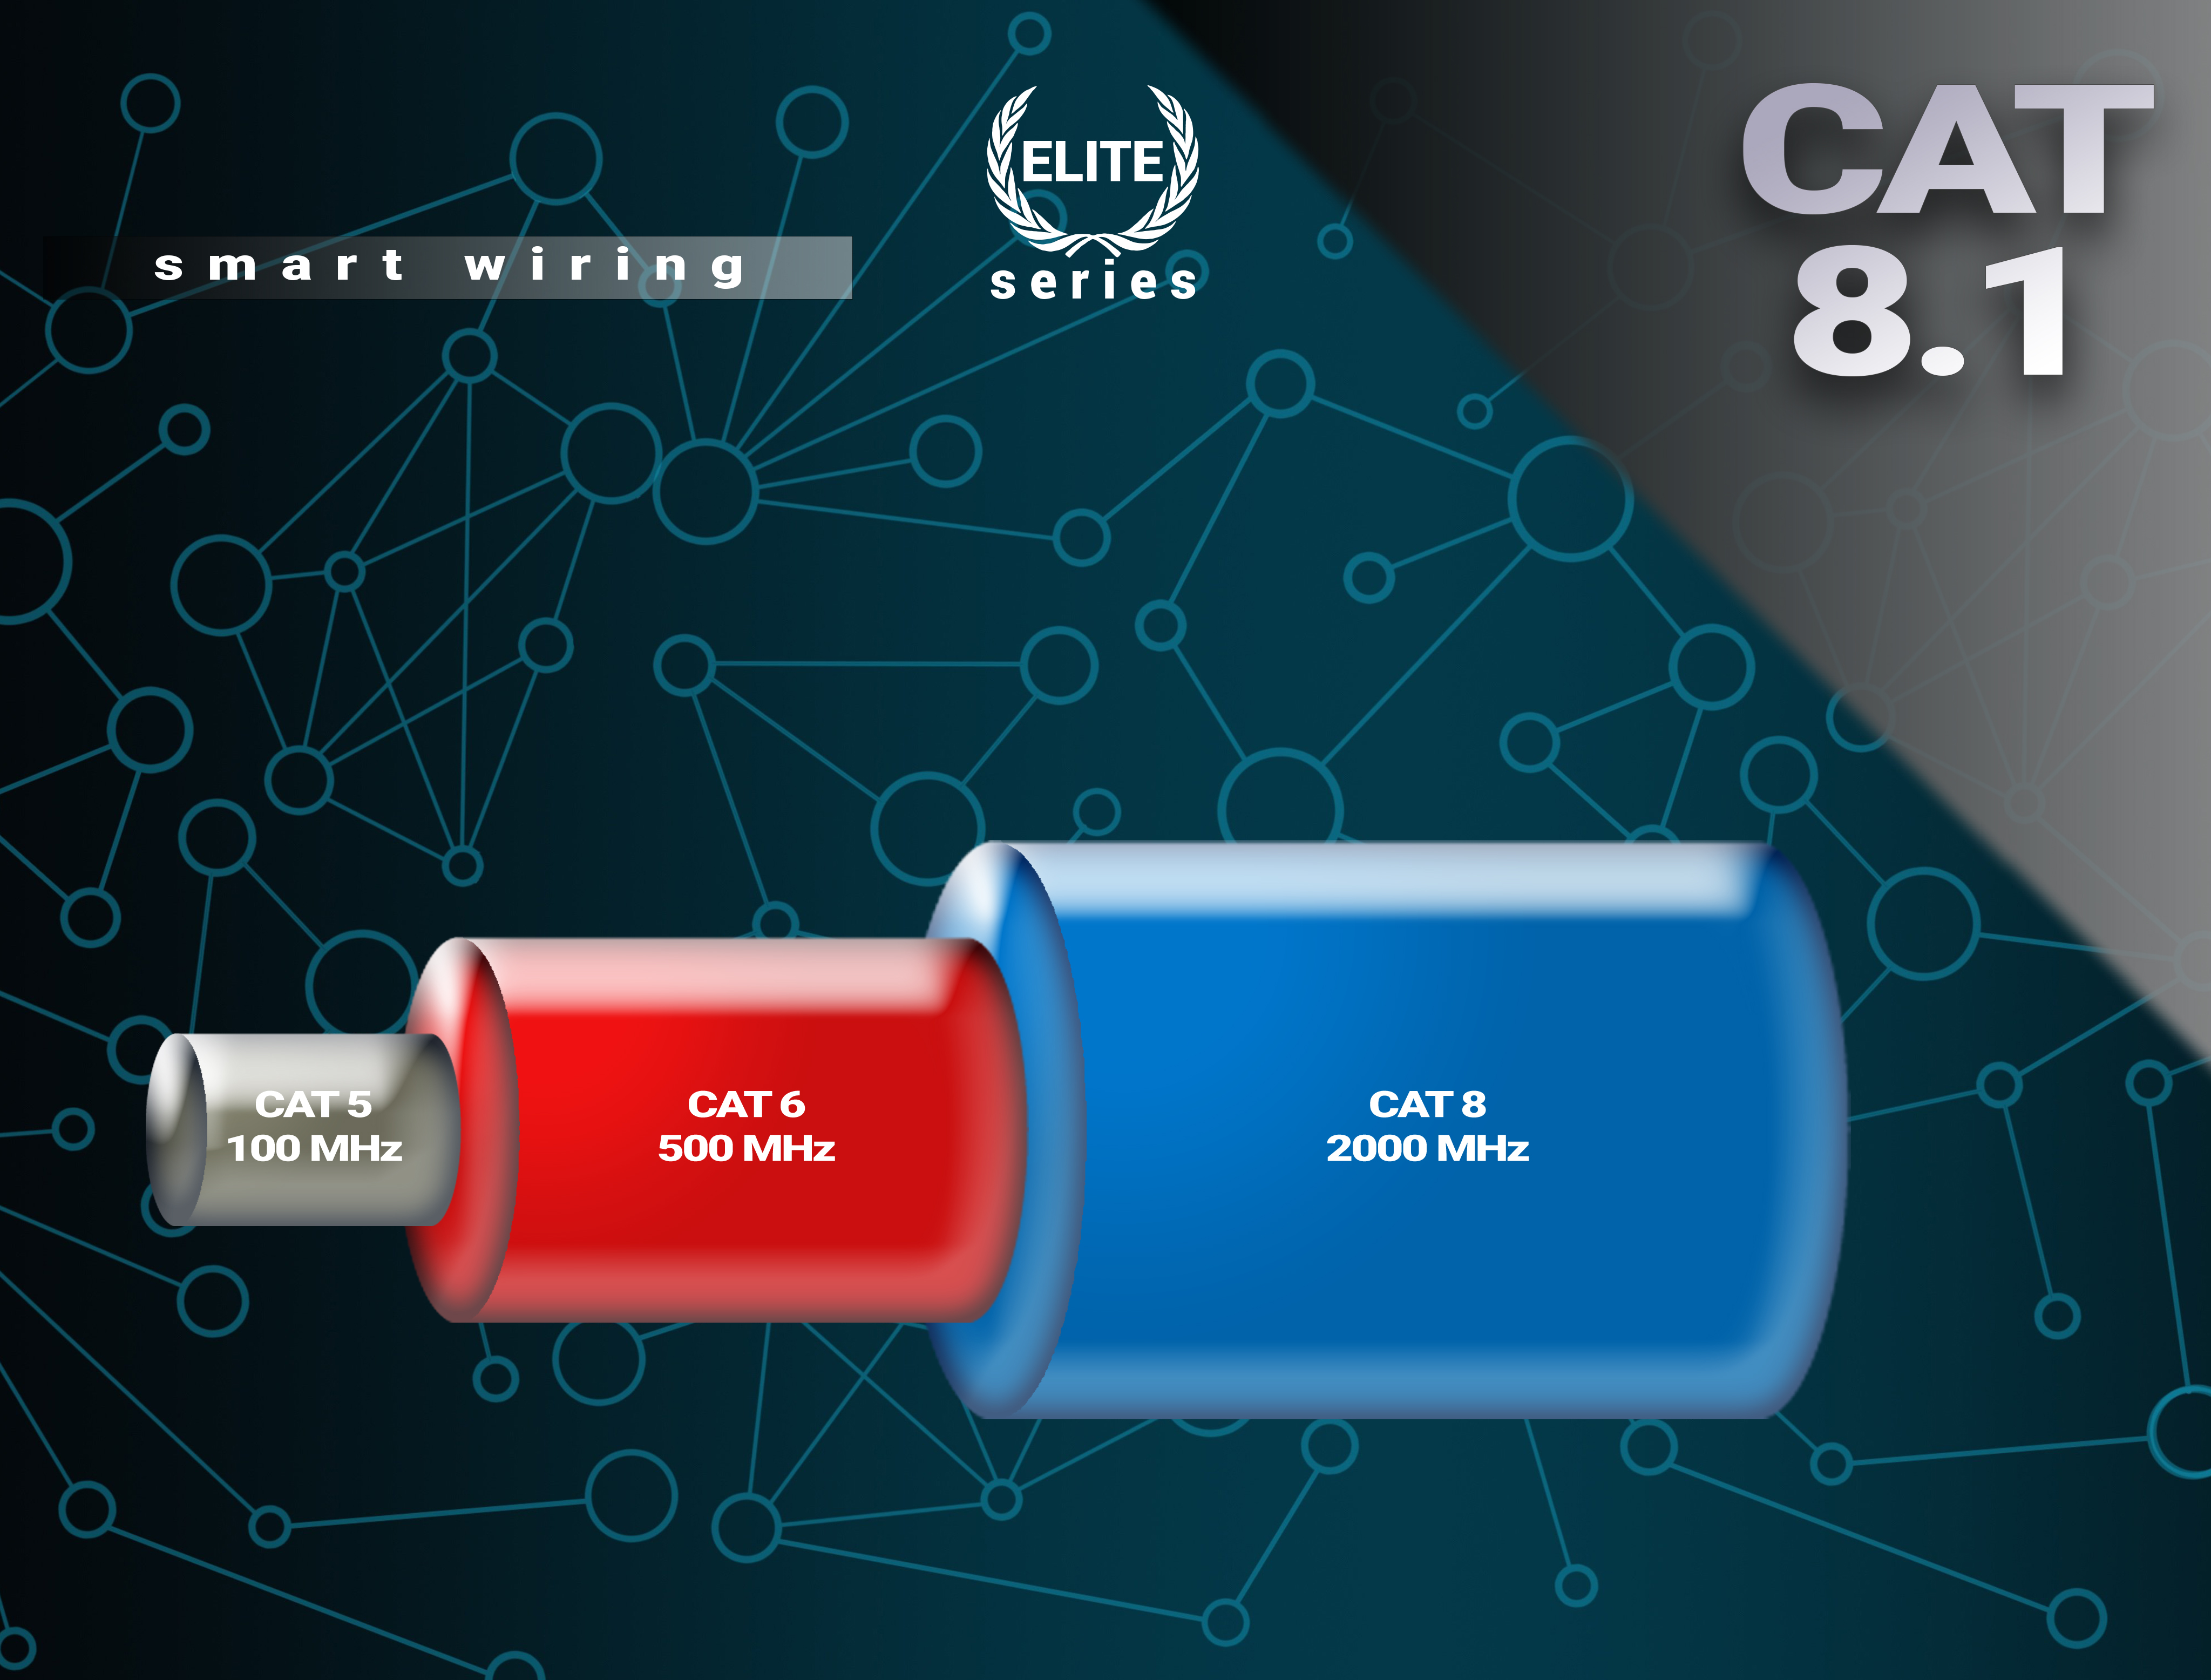 BIVANI Premium 40 Gbps LAN CAT Kabel m Netzwerkkabel, Elite-Series, - 8.1 7,5